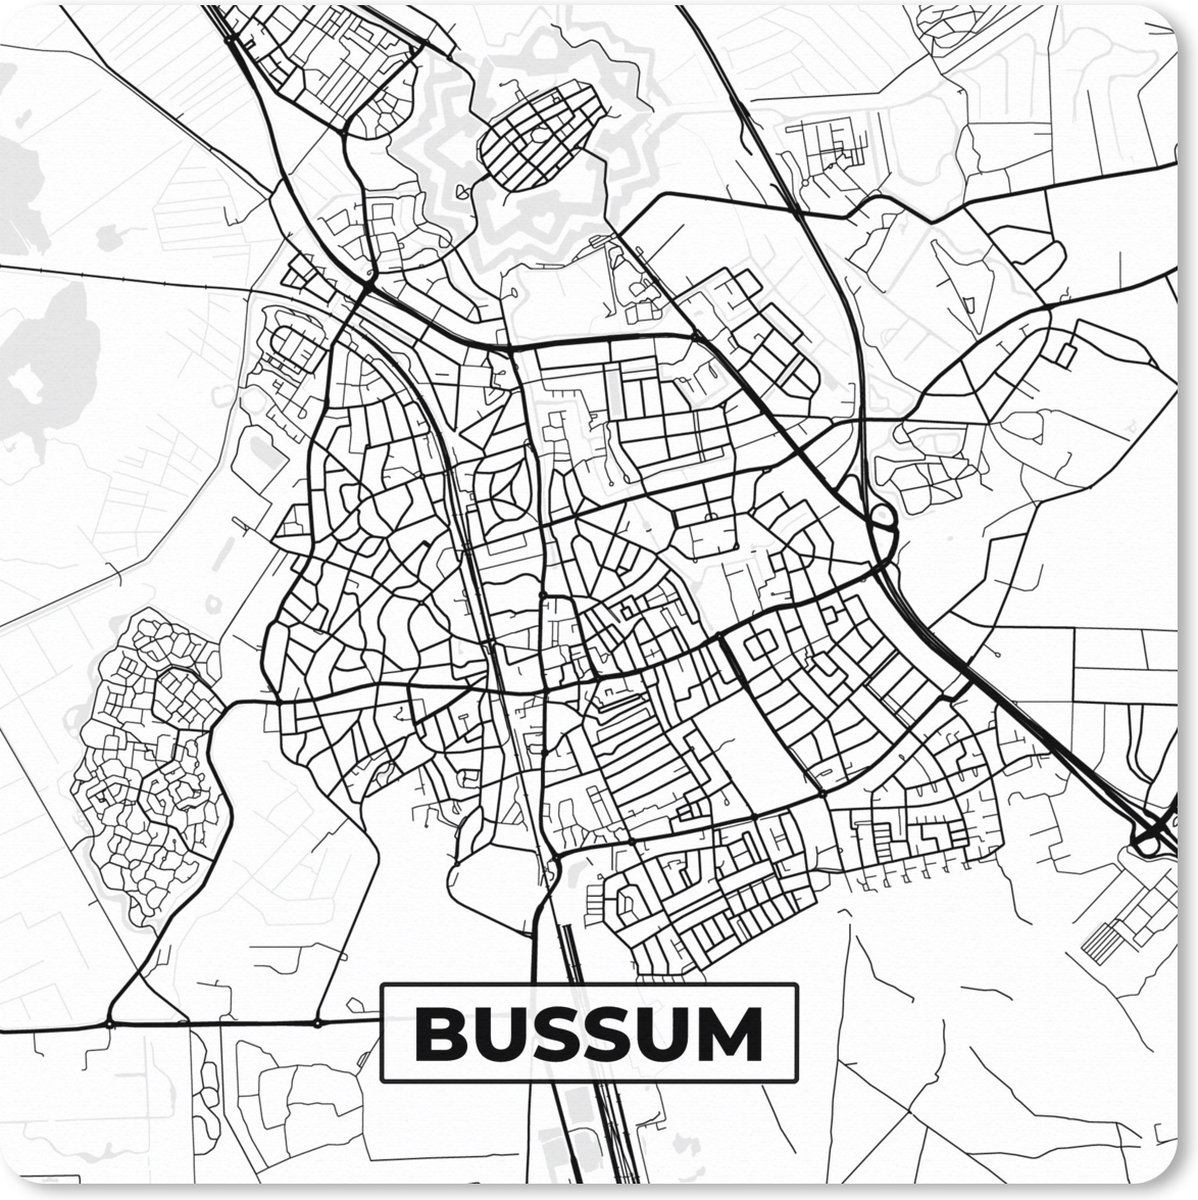 Muismat XXL - Bureau onderlegger - Bureau mat - Kaart - Bussum - Zwart - Wit - 80x80 cm - XXL muismat